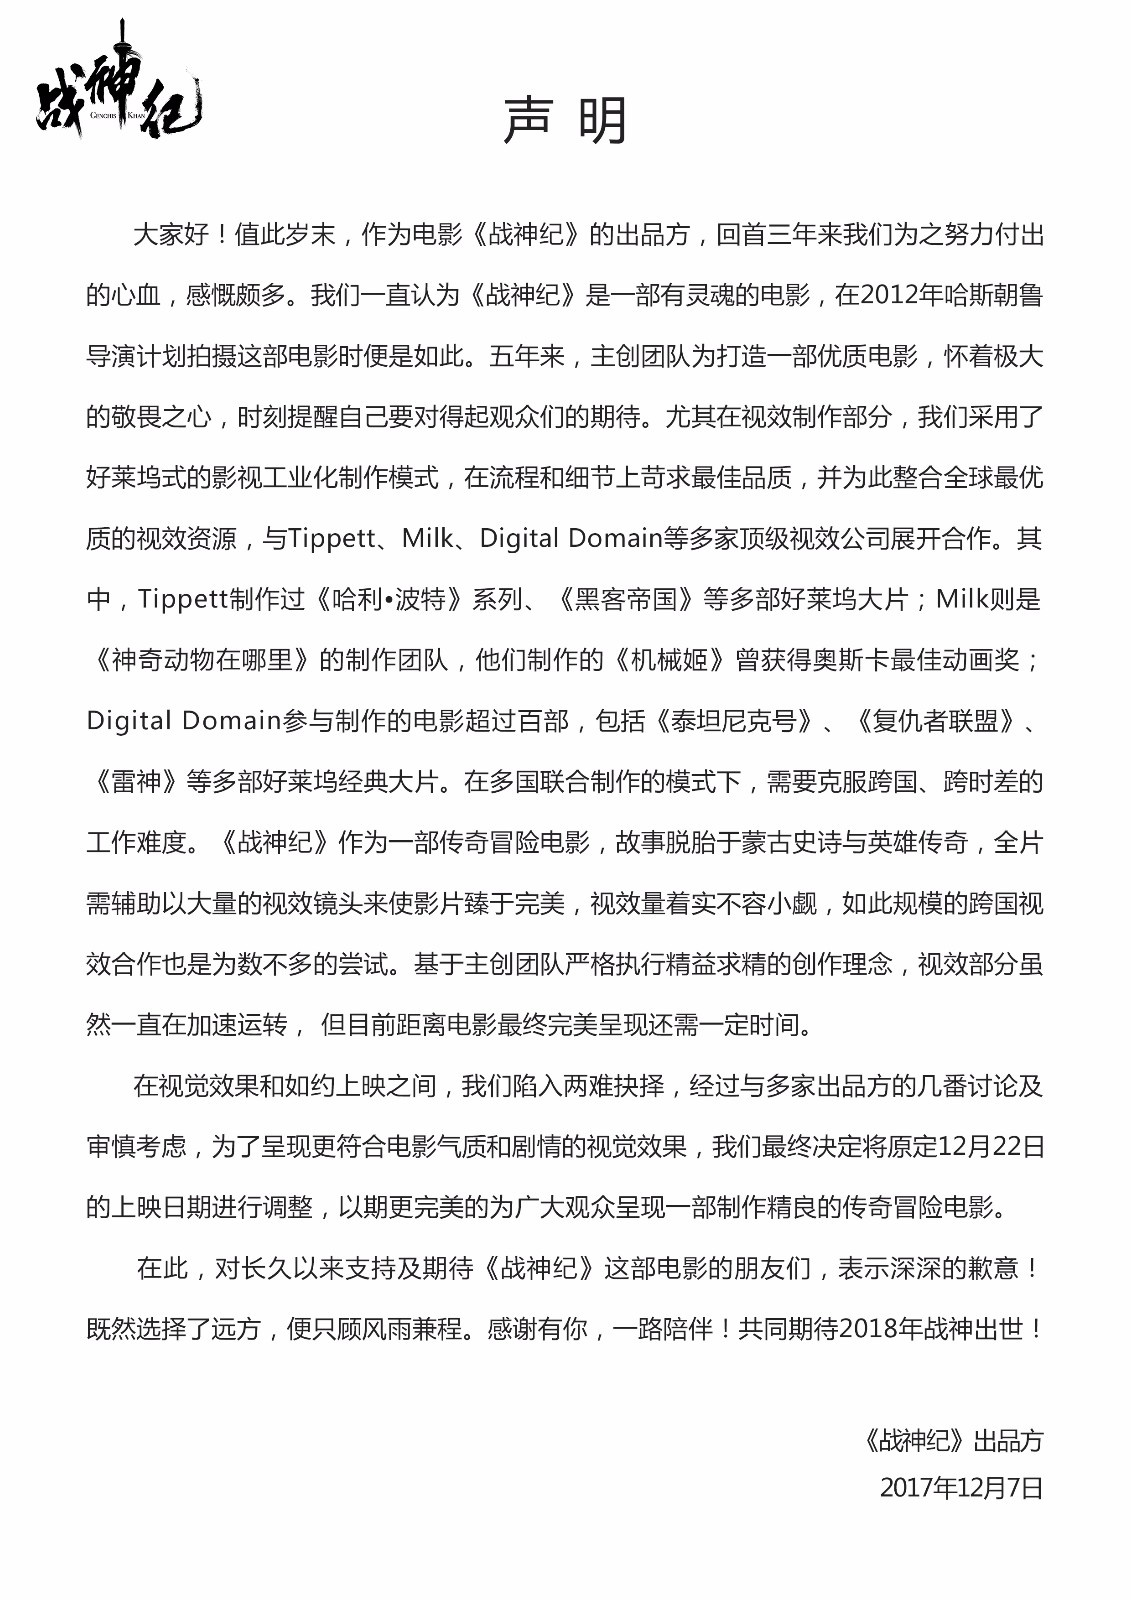 陈伟霆林允《战神纪》改档 受视效制作成本影响(图2)